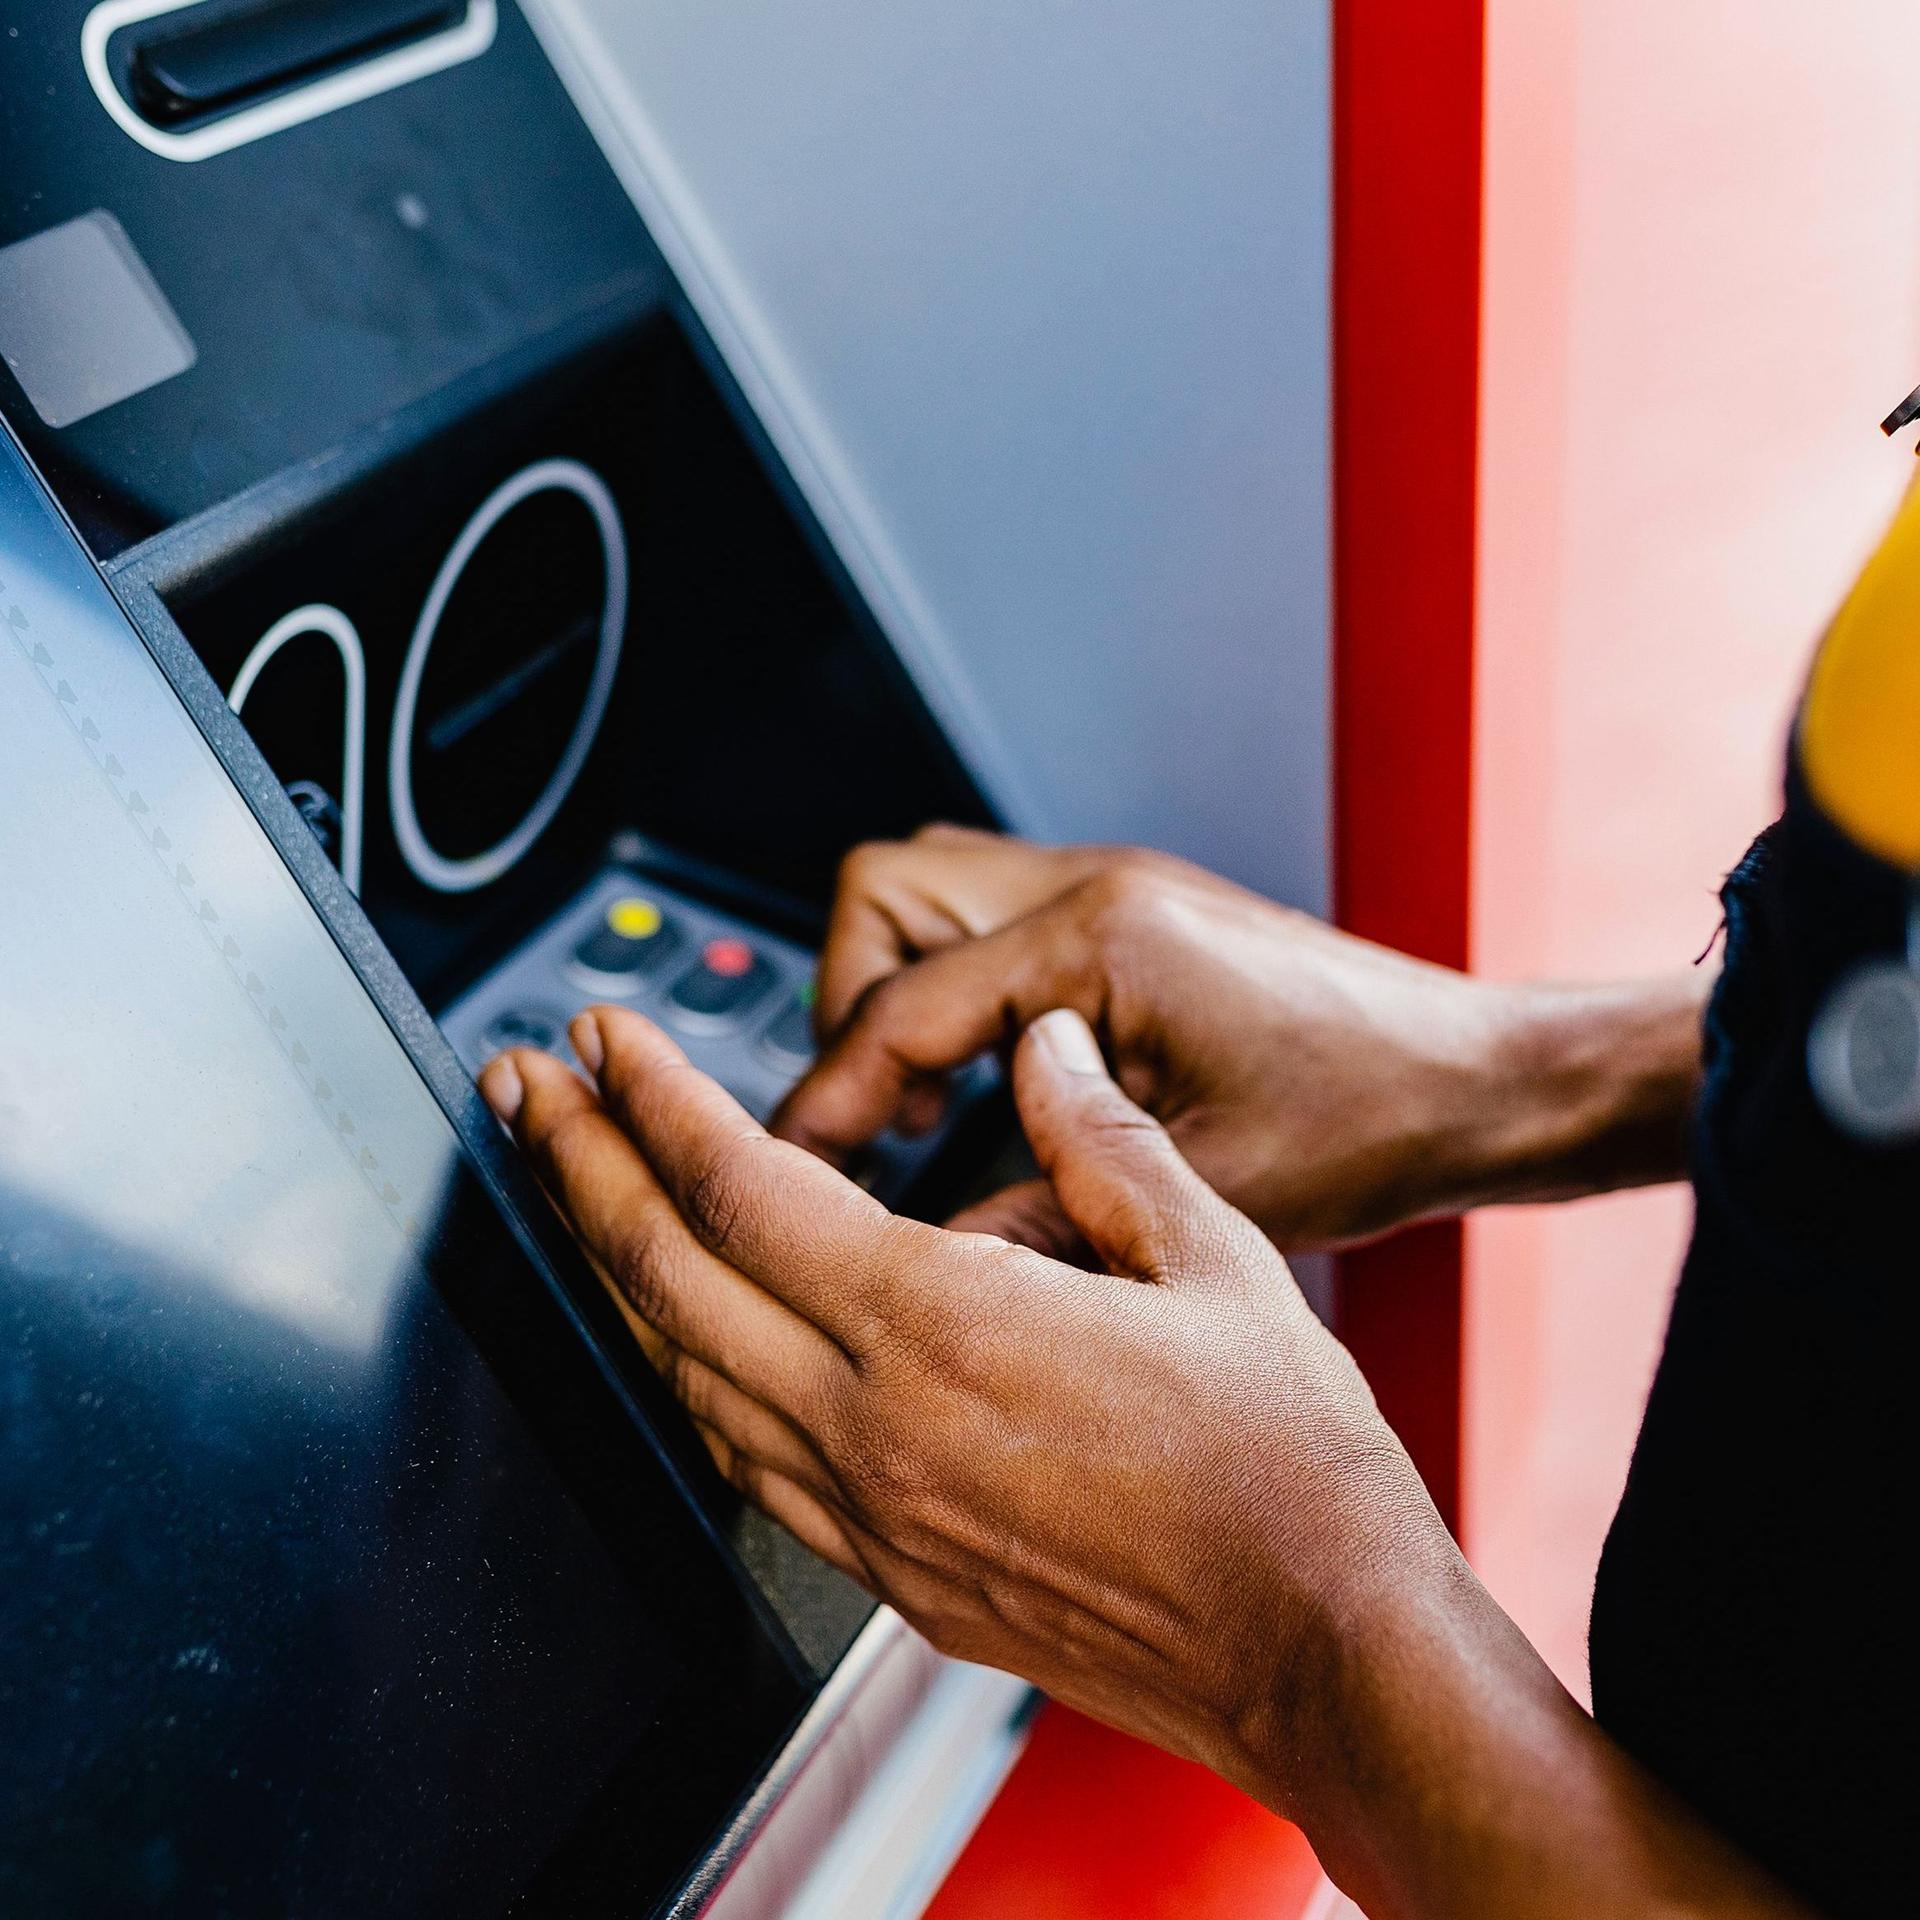 Nahaufnahme der Hände und Arme einer Frau, die mit verdeckter Hand ihren Pin-Code an einem Bankautomaten eingibt.